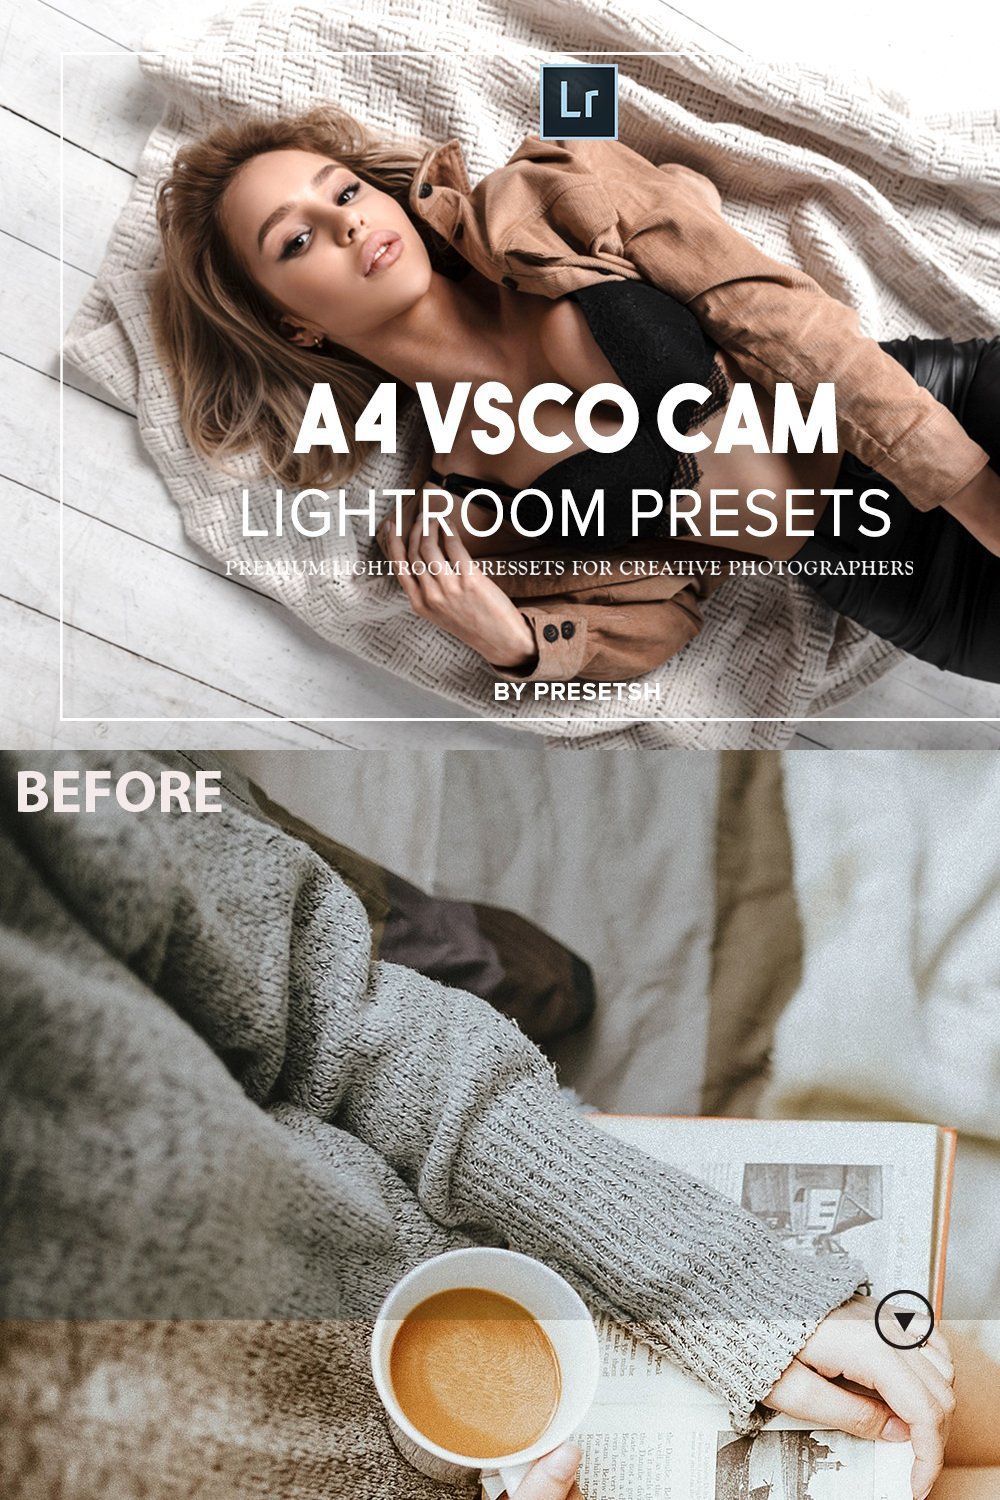 VSCO Cam A4 Inspired For blogger pinterest preview image.